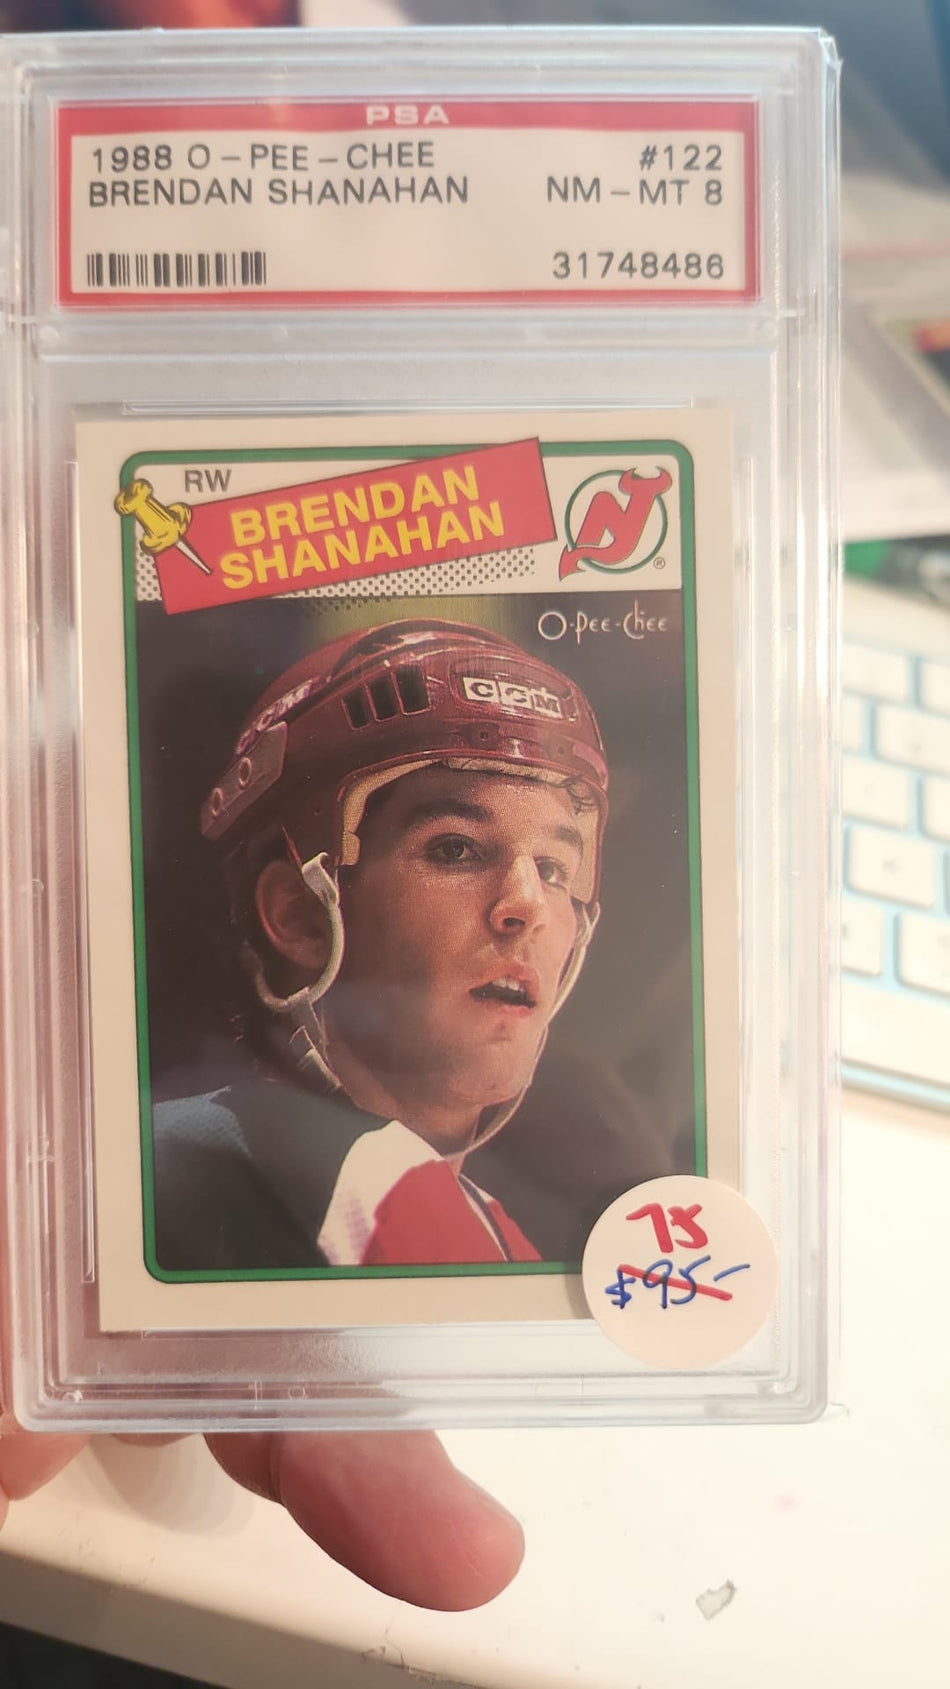 Brendan Shanahan 1988 OPC 122 PSA 8